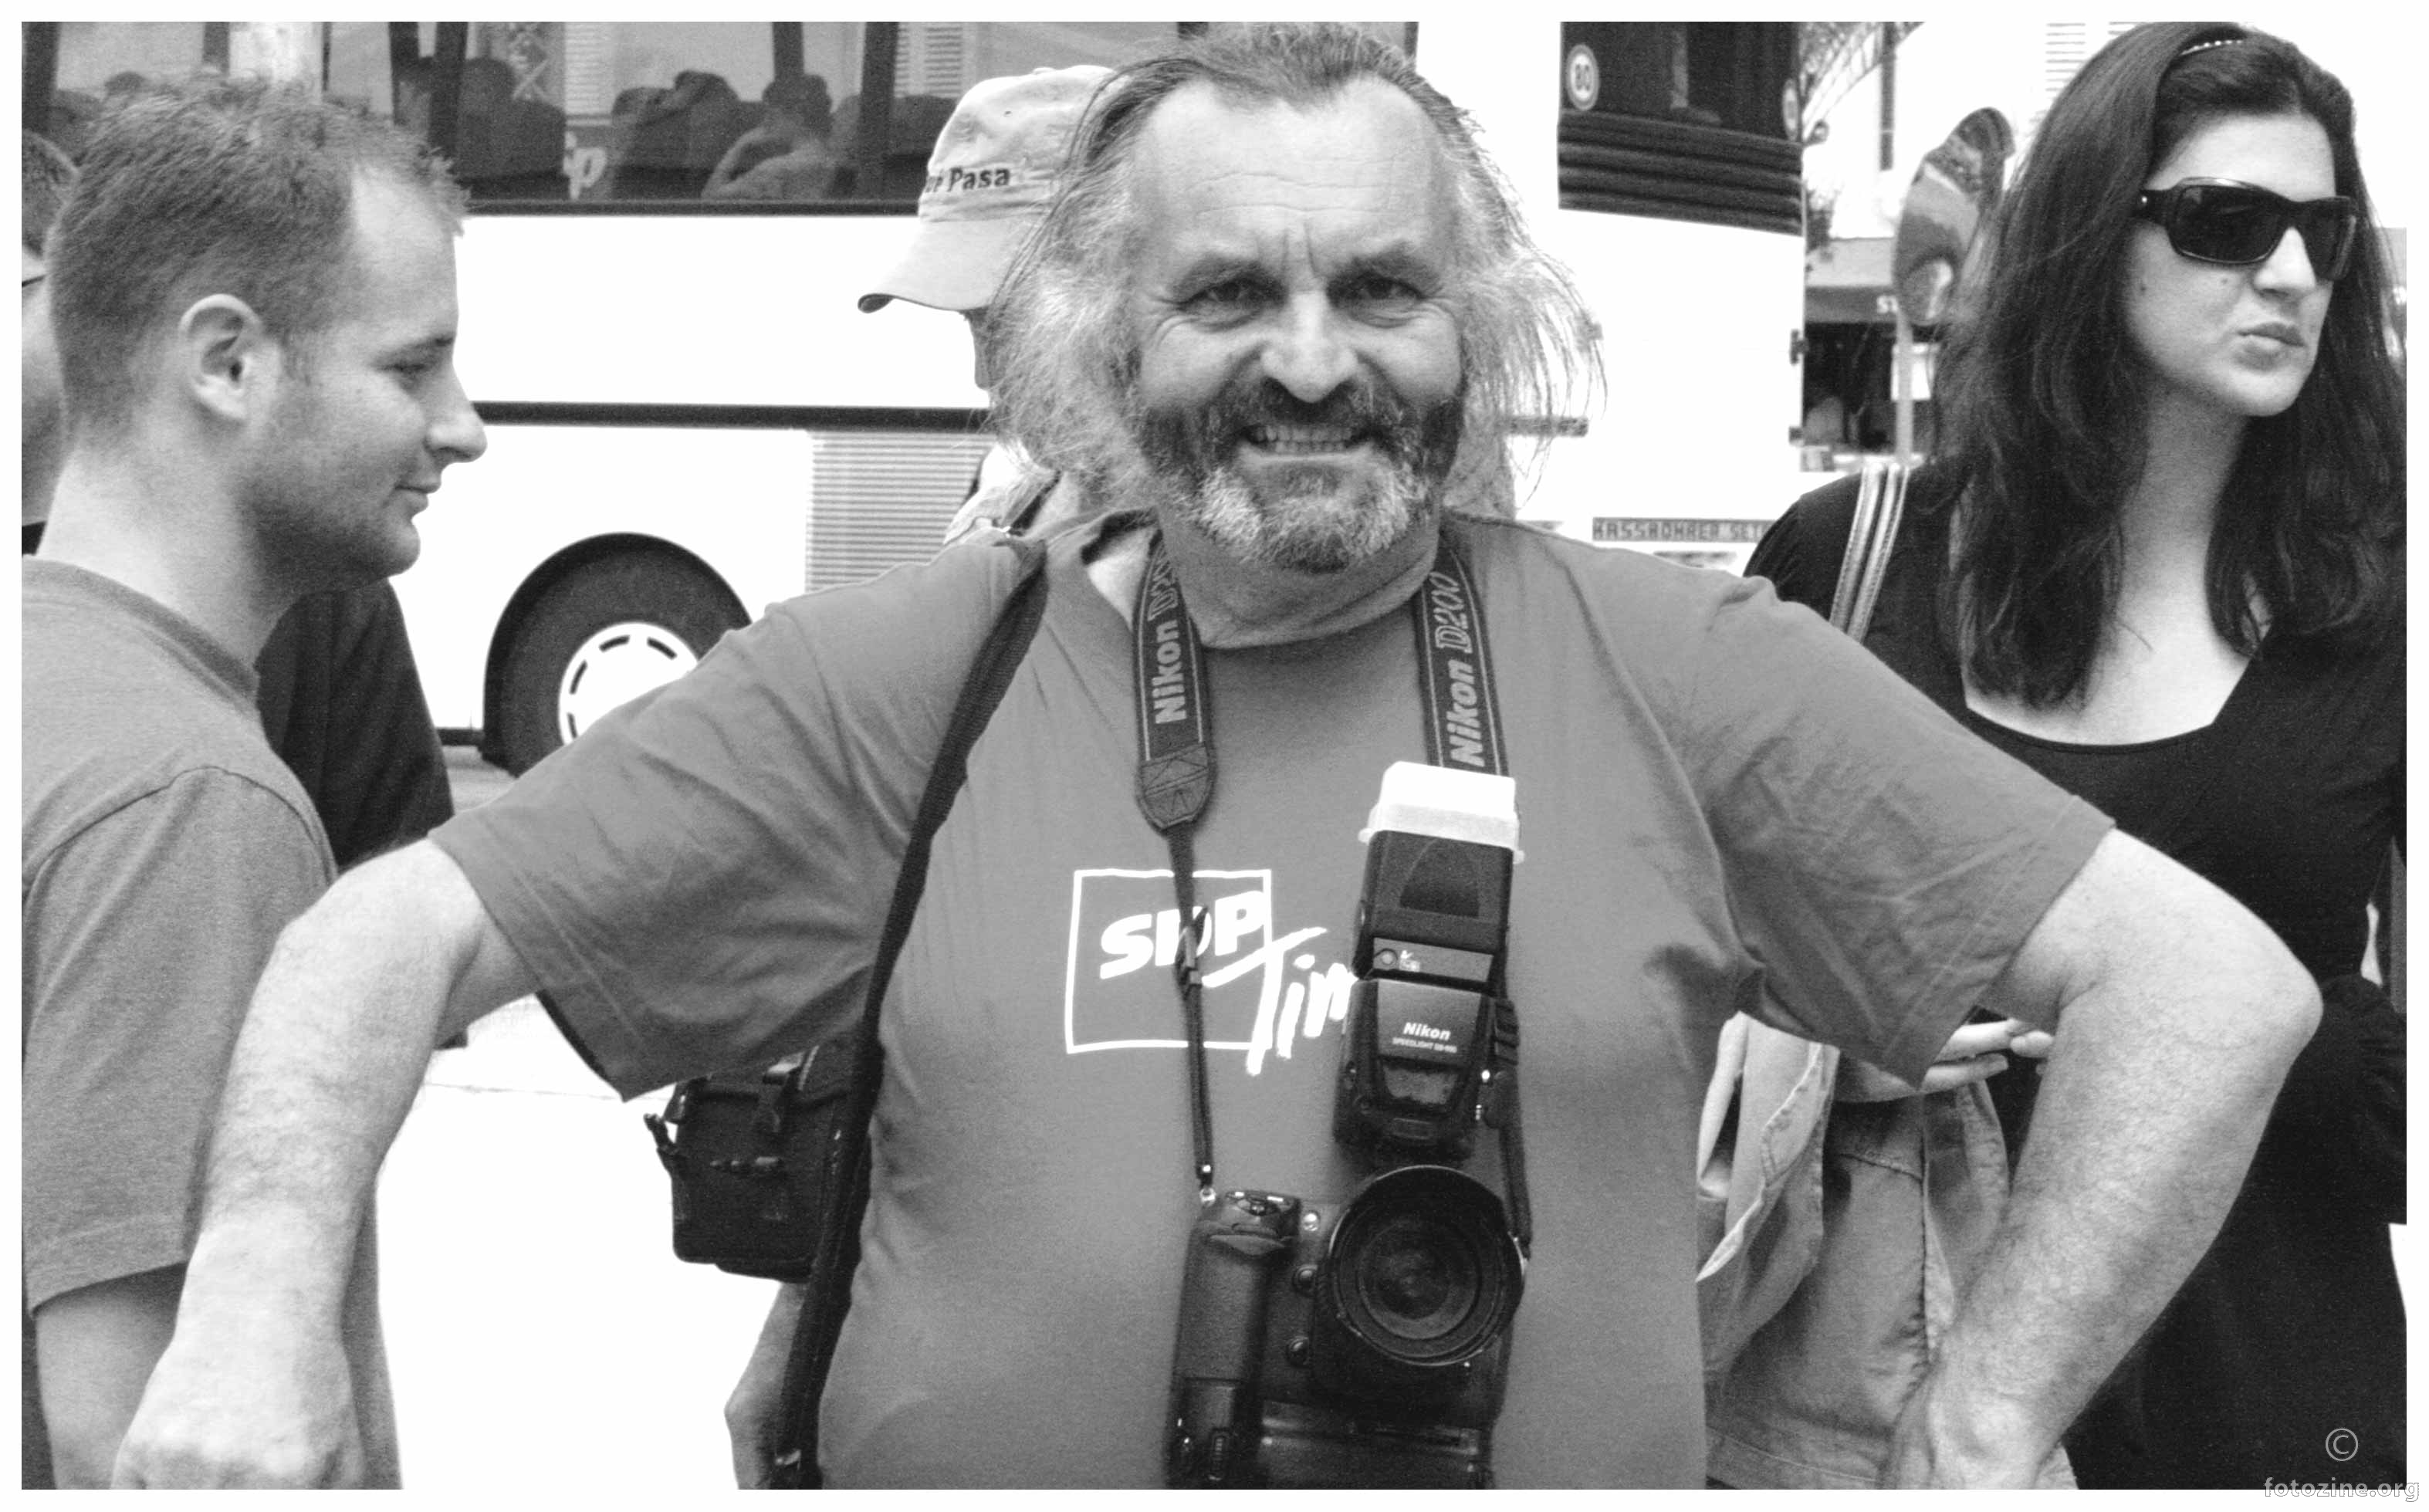 zeljko reporter dbk,2008